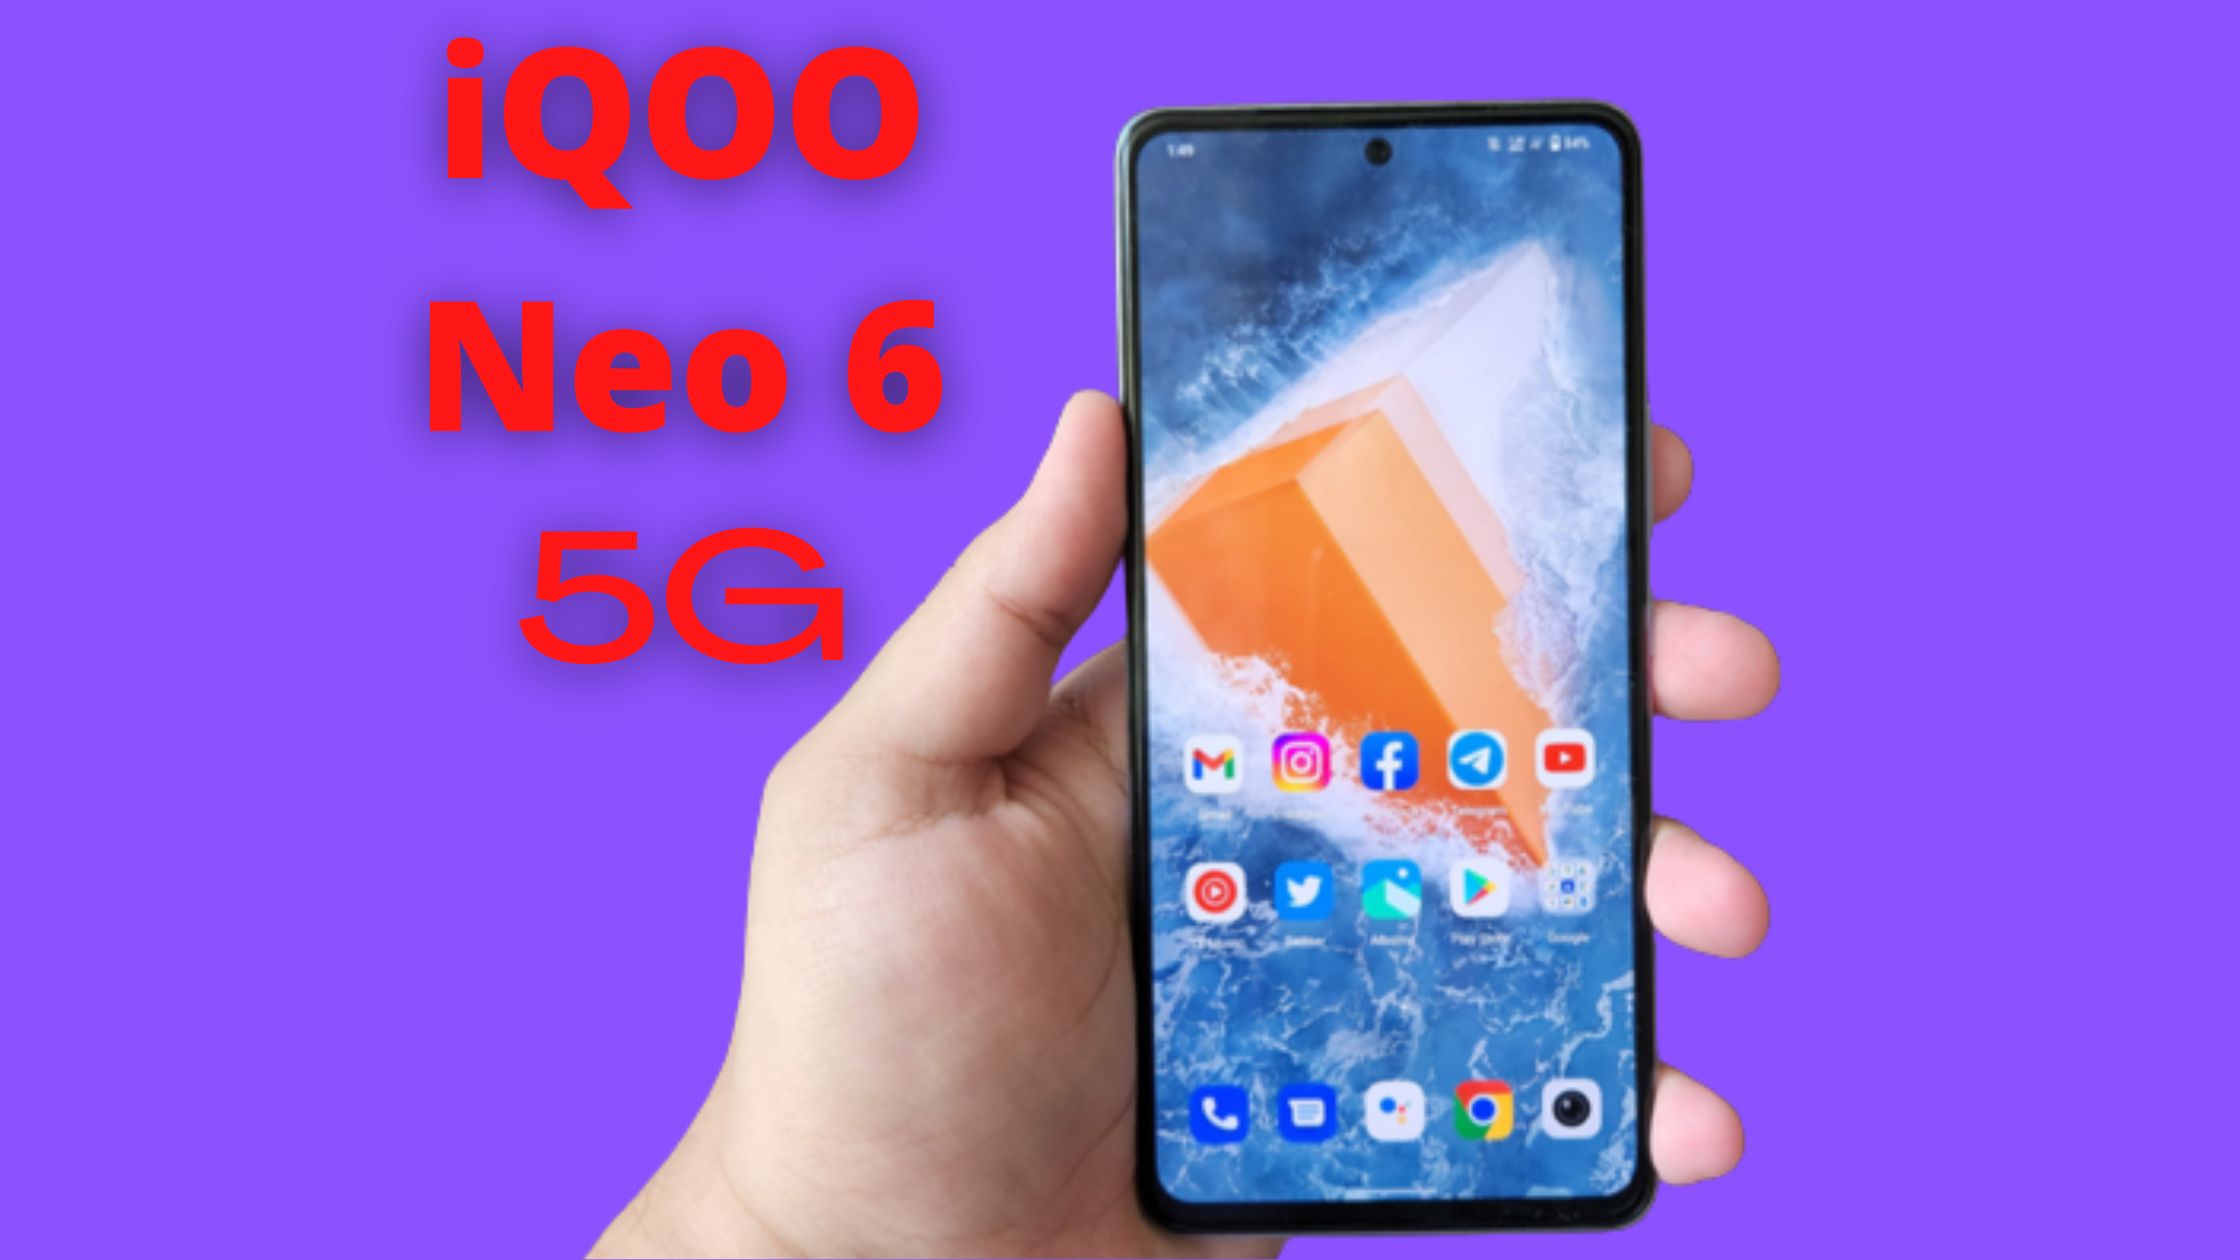 iQOO Neo 6,iQOO Neo 6 5g,iQOO Neo 6 mobile,iQOO Neo 6 smartphone,iQOO Neo 6 phone